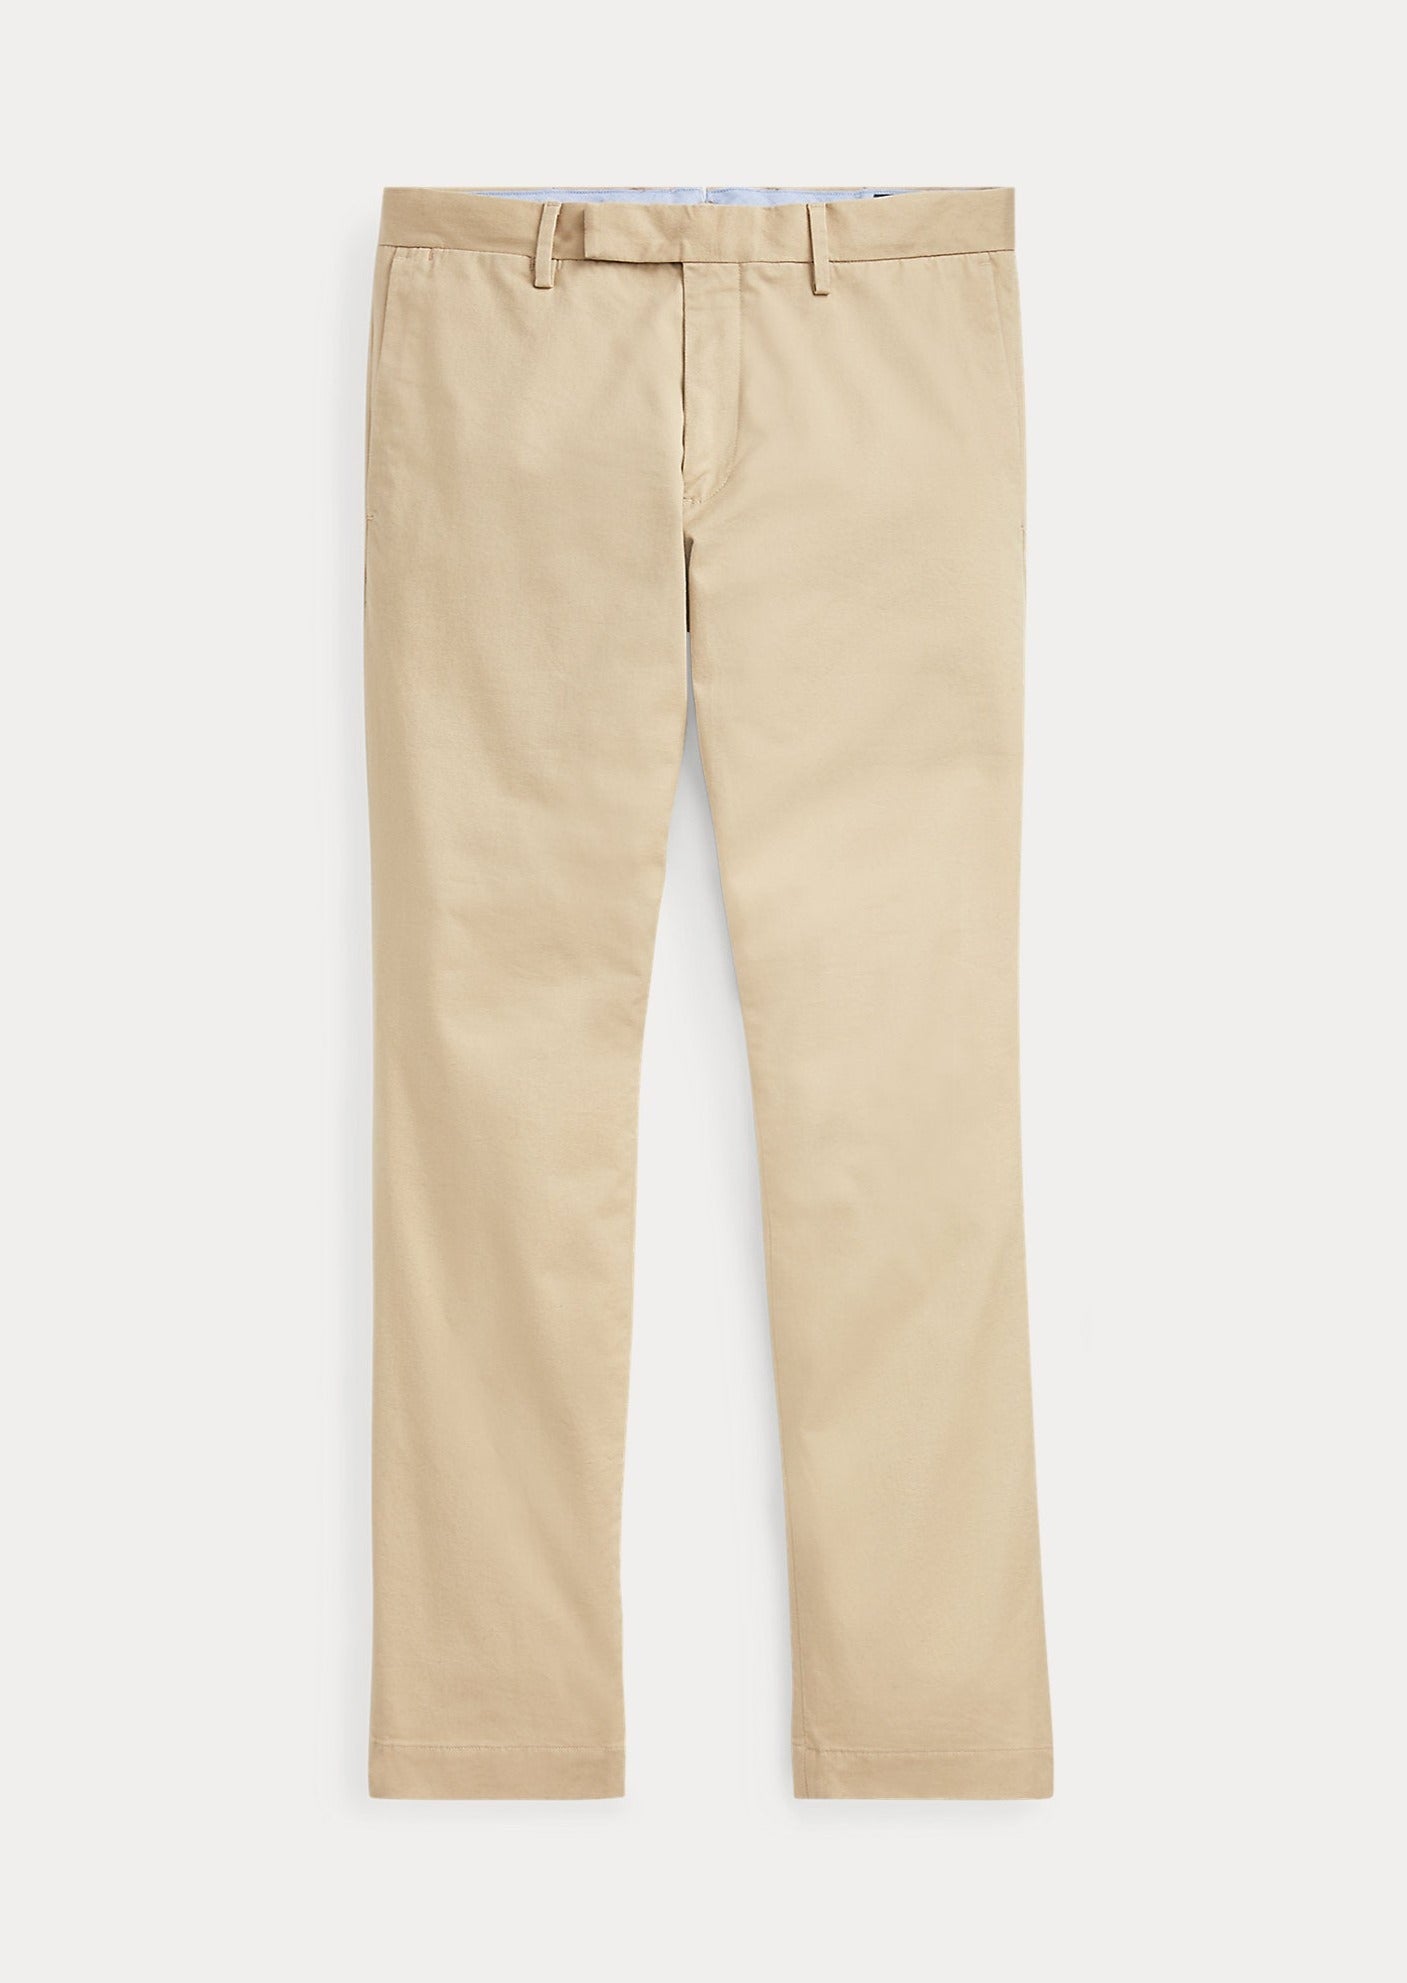 Pantalon chino homme Ralph Lauren beige | Georgespaul